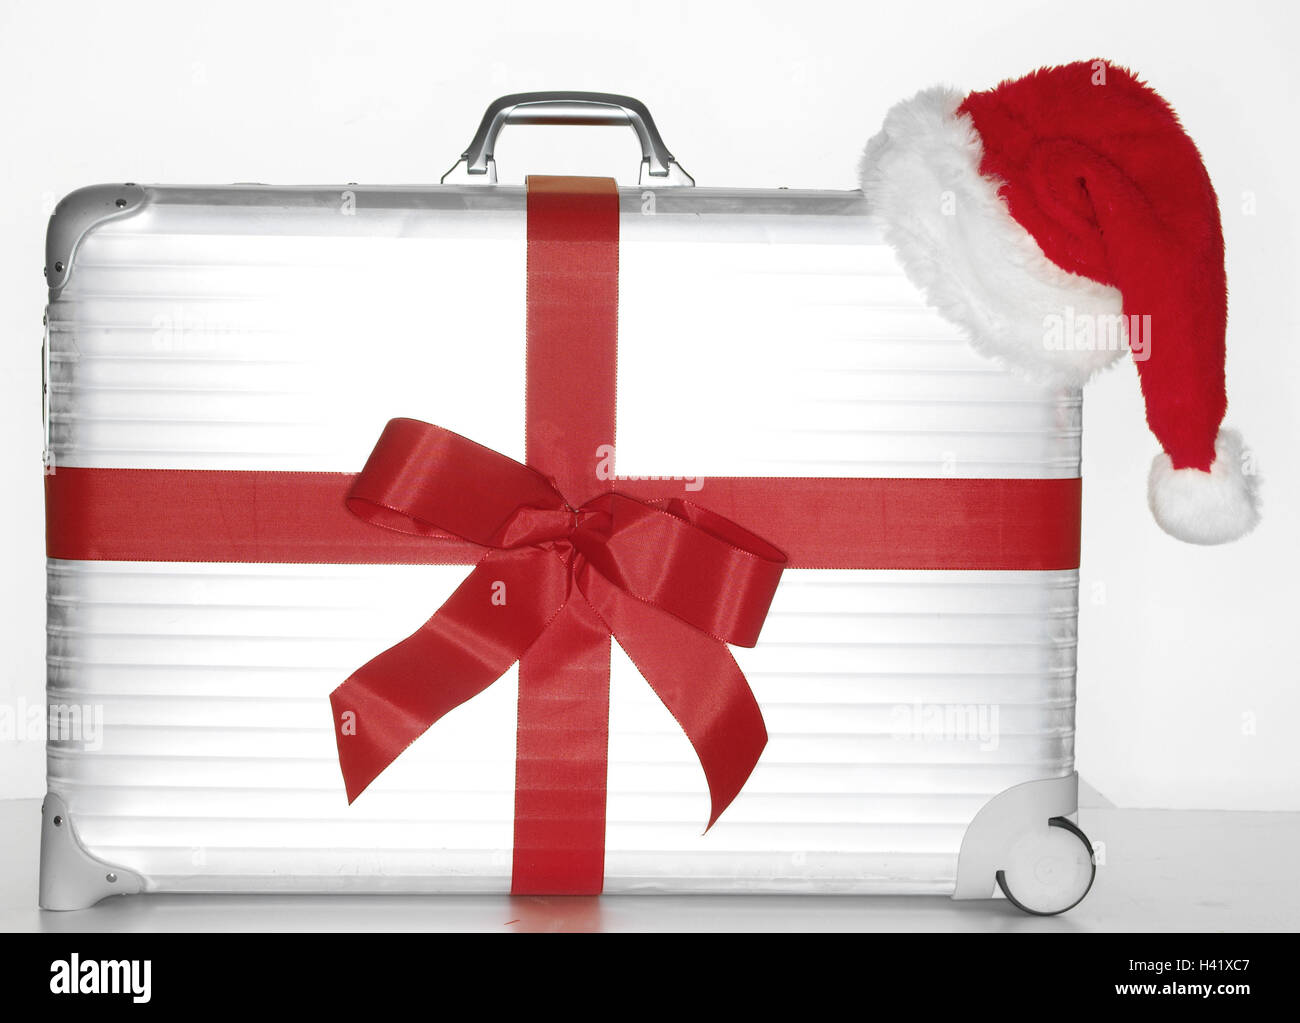 En aluminium, boucle, rouge, Santa's cap suitcase, argent, argent, assurance, voyage, présent, cadeau de Noël, Noël surprise, vacances, voyage, vacances de Noël, vacances de Noël, vacances de Noël, pour Noël, voyages, voyages à l'étranger, icône, recr Banque D'Images